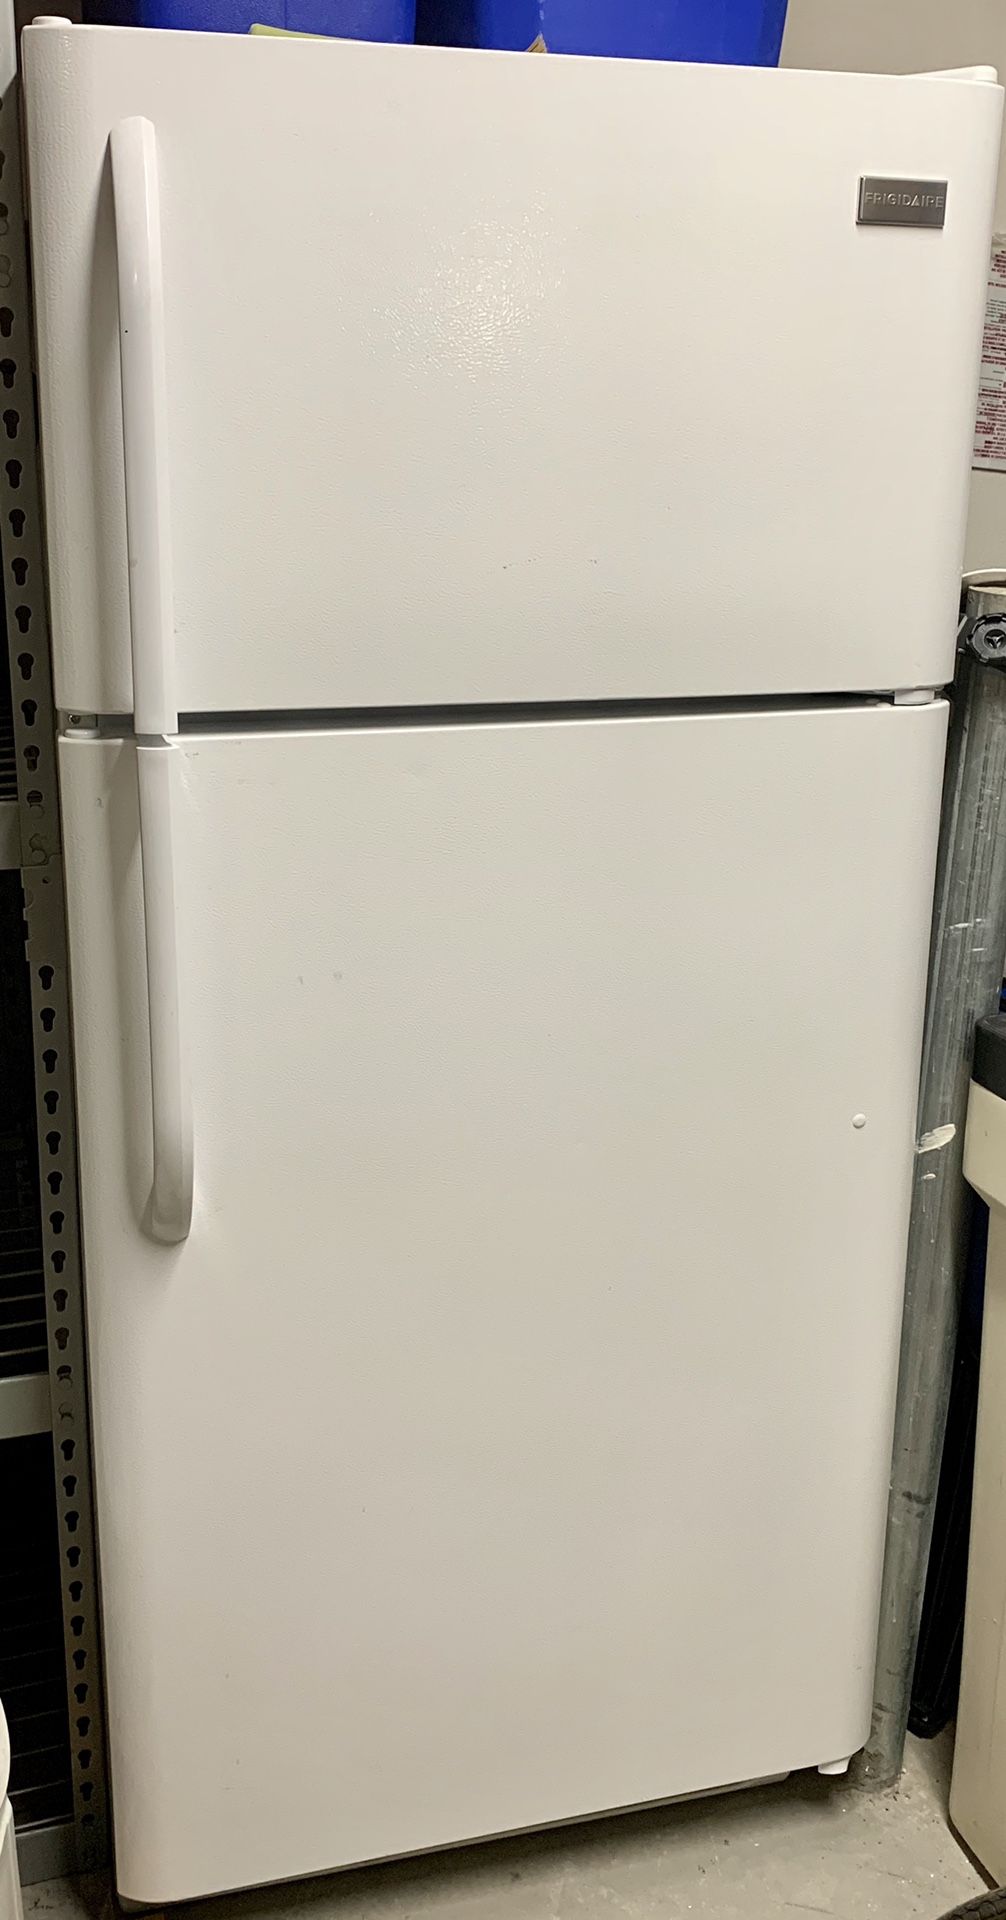 White kitchen appliances